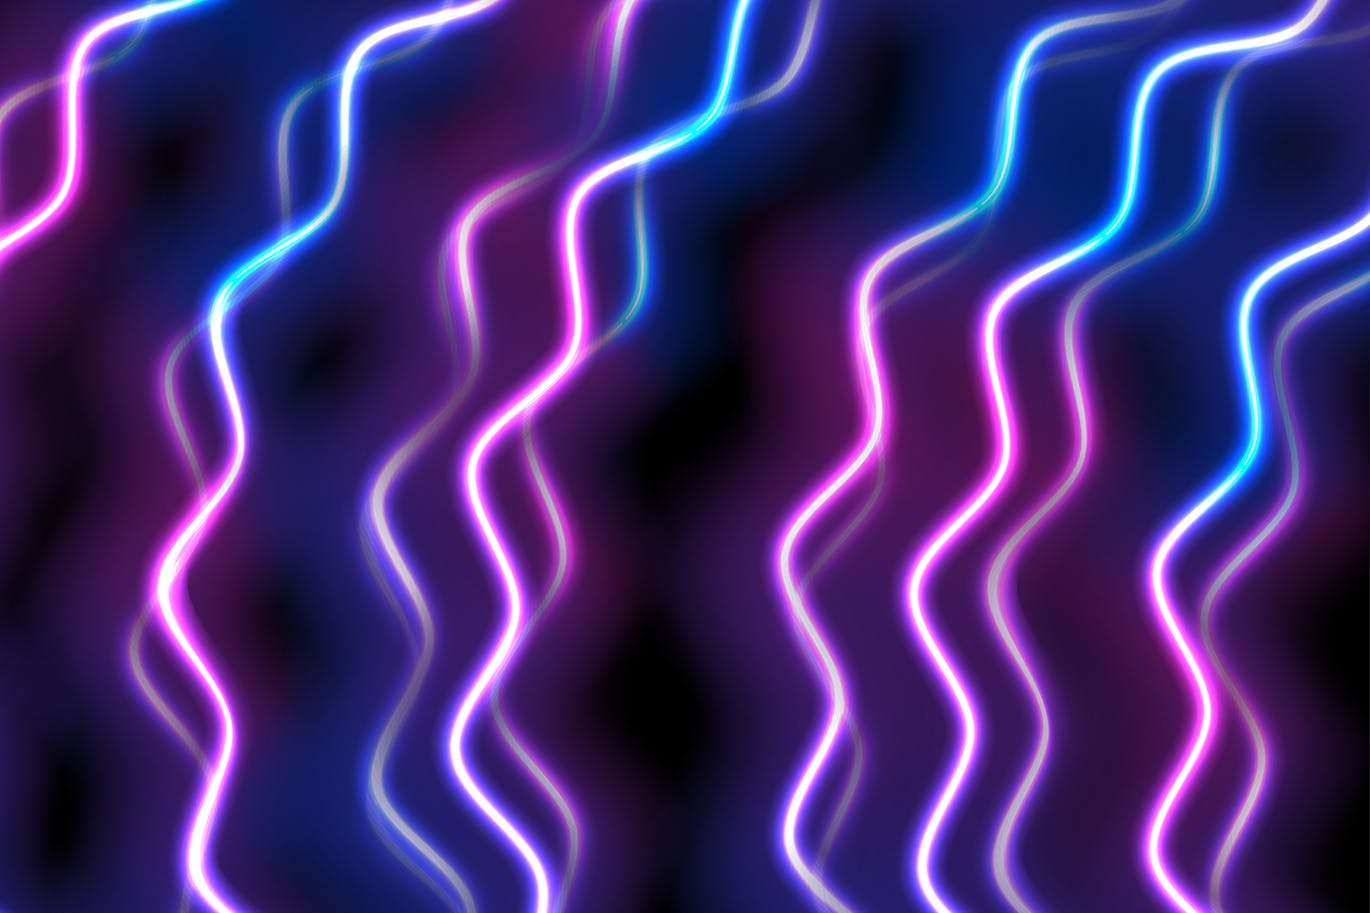 蓝紫色霓虹波高清抽象蚂蚁素材精选背景素材 Blue purple neon waves abstract background插图